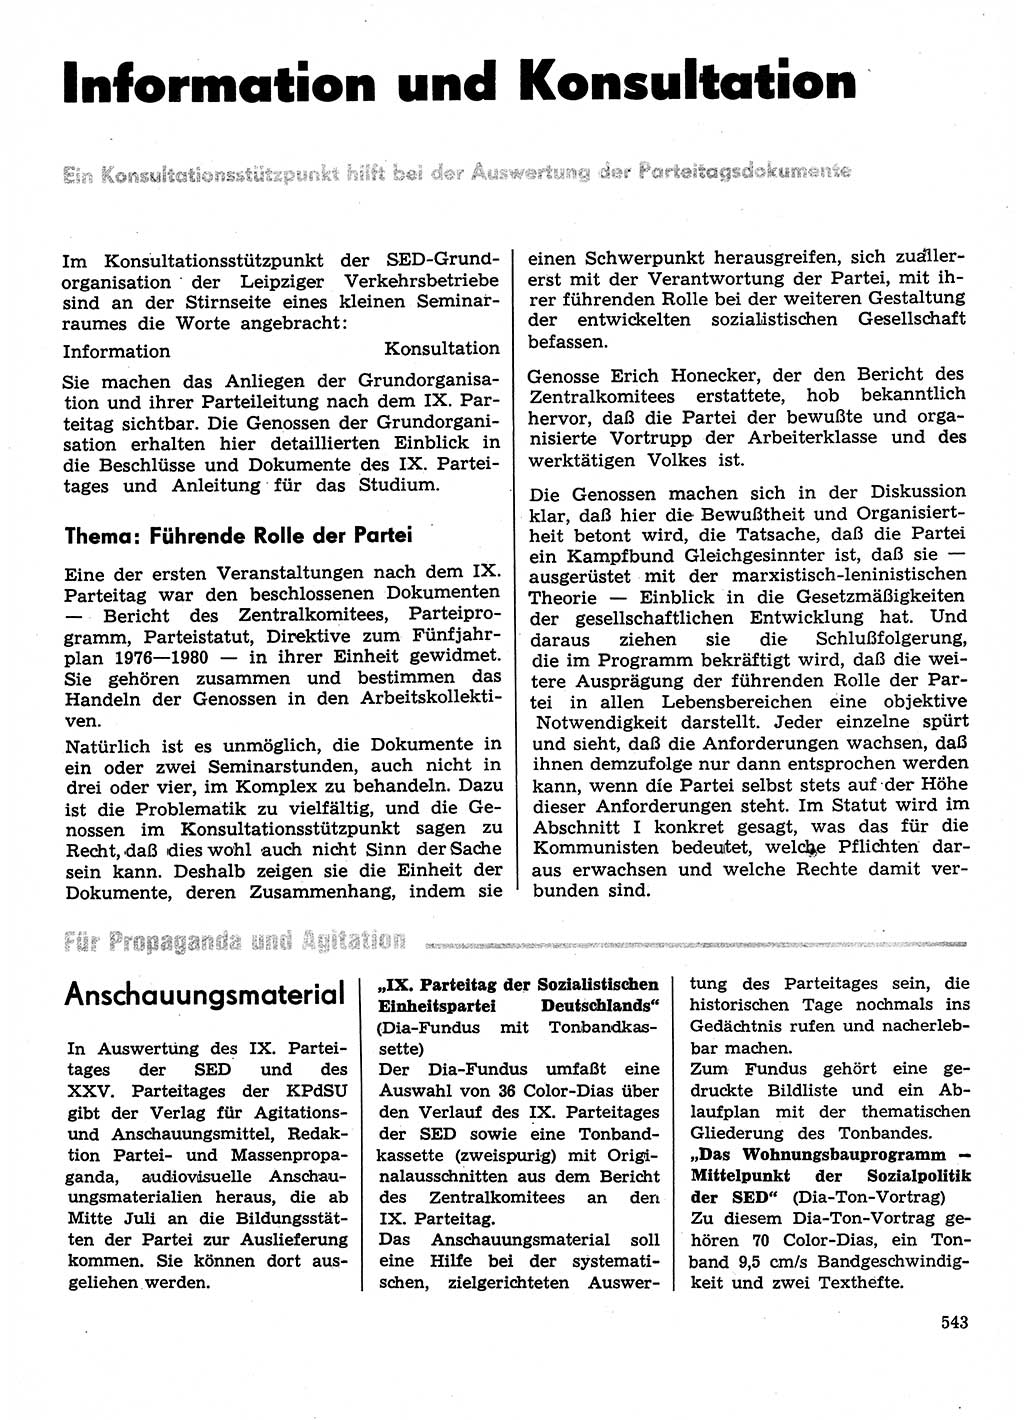 Neuer Weg (NW), Organ des Zentralkomitees (ZK) der SED (Sozialistische Einheitspartei Deutschlands) für Fragen des Parteilebens, 31. Jahrgang [Deutsche Demokratische Republik (DDR)] 1976, Seite 543 (NW ZK SED DDR 1976, S. 543)